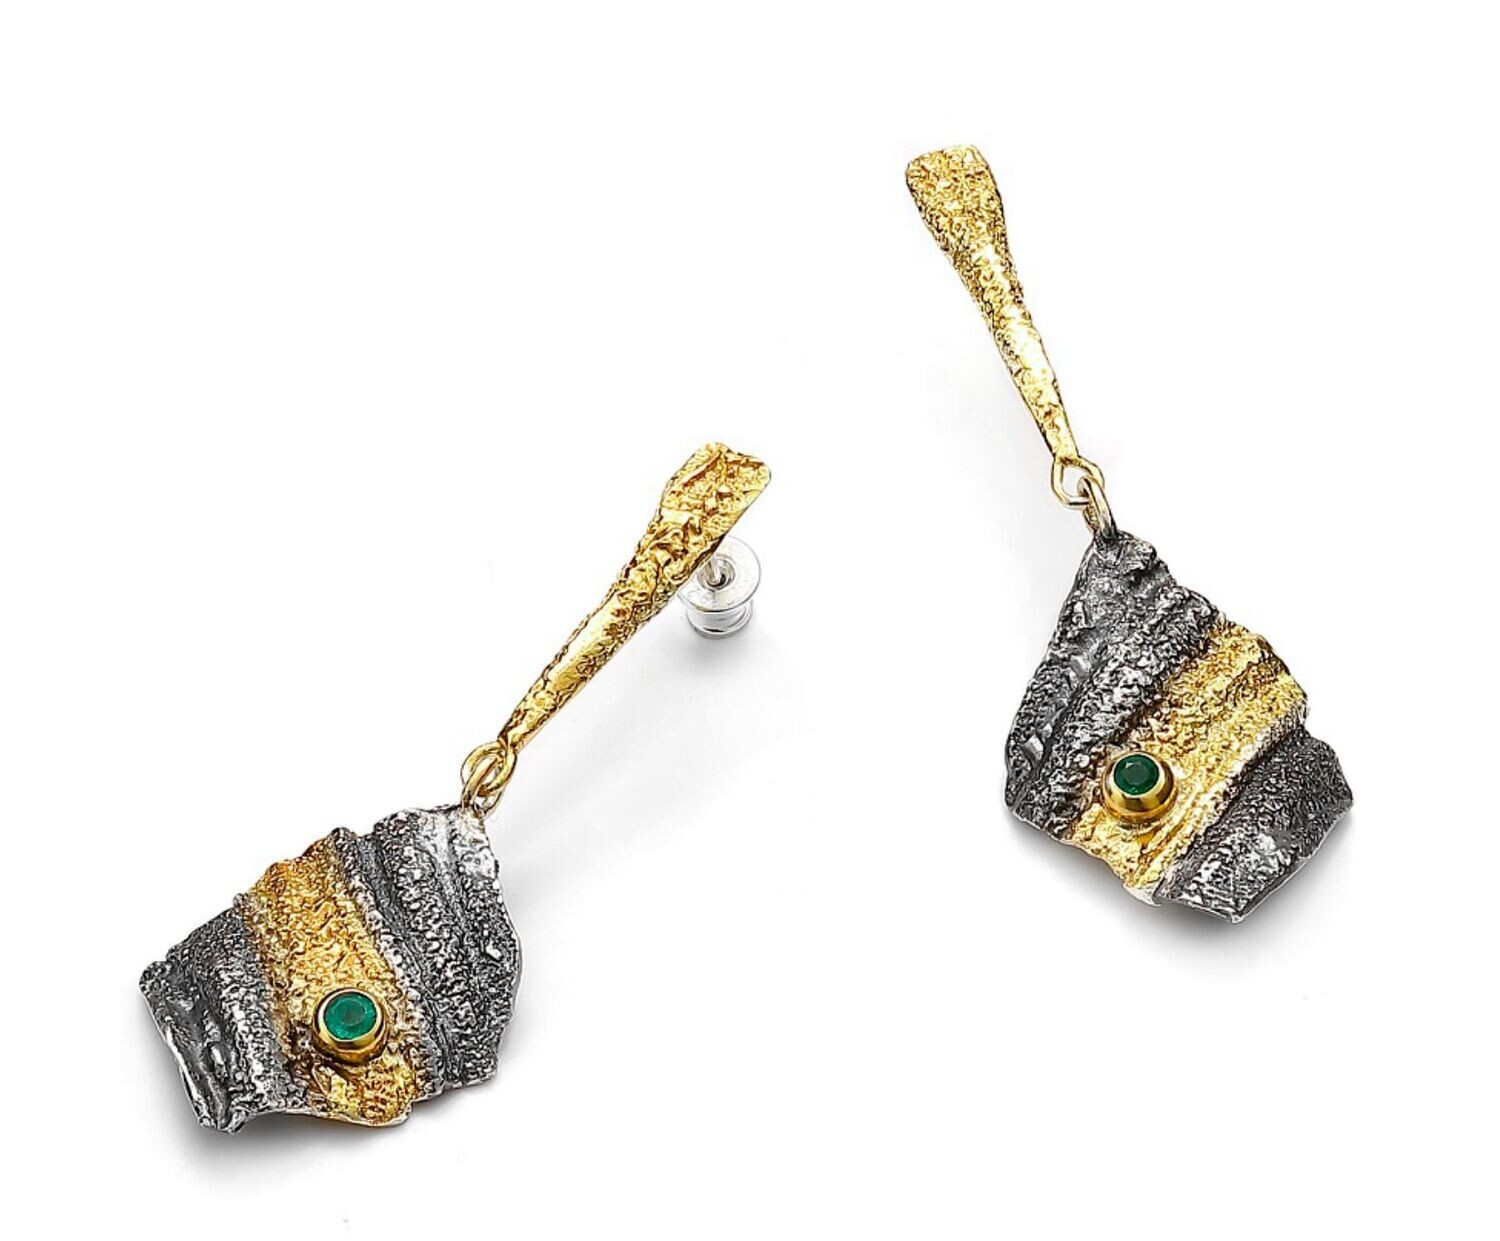 Statement emerald drop earrings